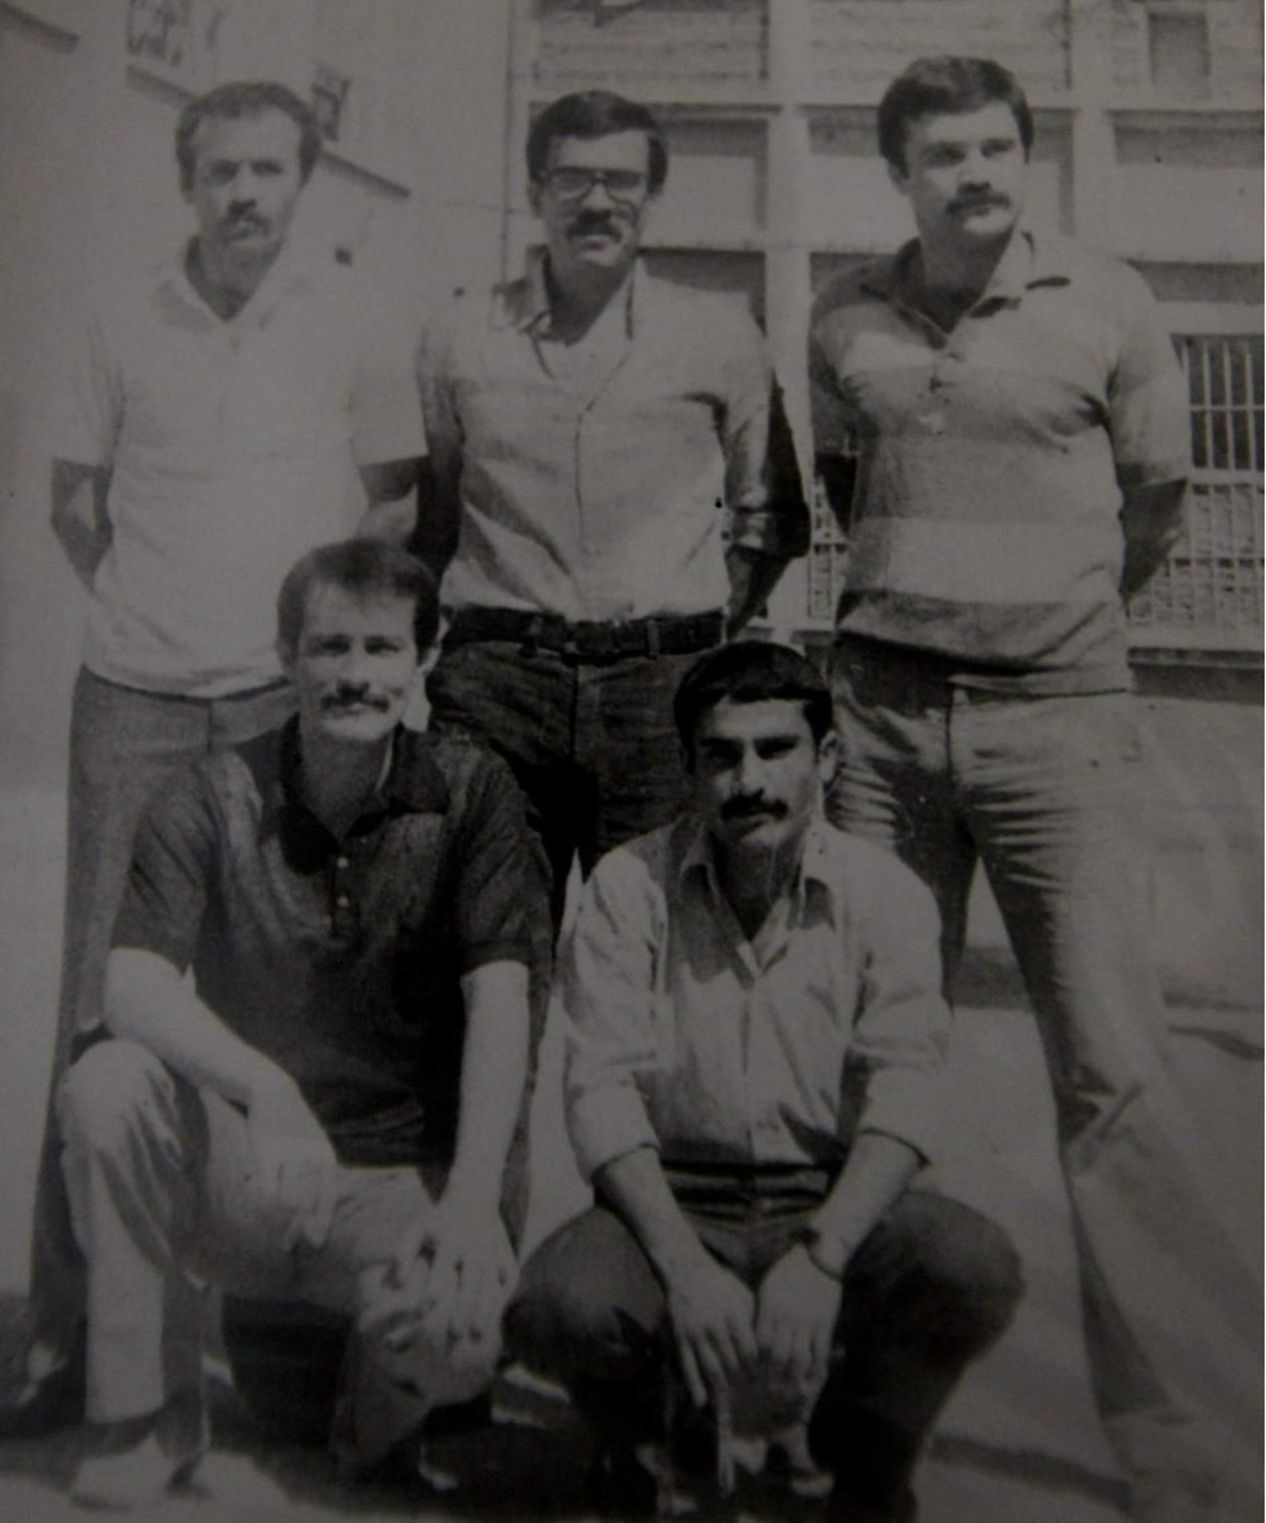 Hıdır Aslan (Ayakta sol başta), İlyas Has (Ayakta soldan ikinci), Ali Akgün, İsmail Levent Aksan, Veli Biçer (İlyas Has, Süleyman Tosun'un öldürülmesi suçundan idama mahkum oldu. İnfaz, 7 Ekim 1984'de gerçekleştirildi.)